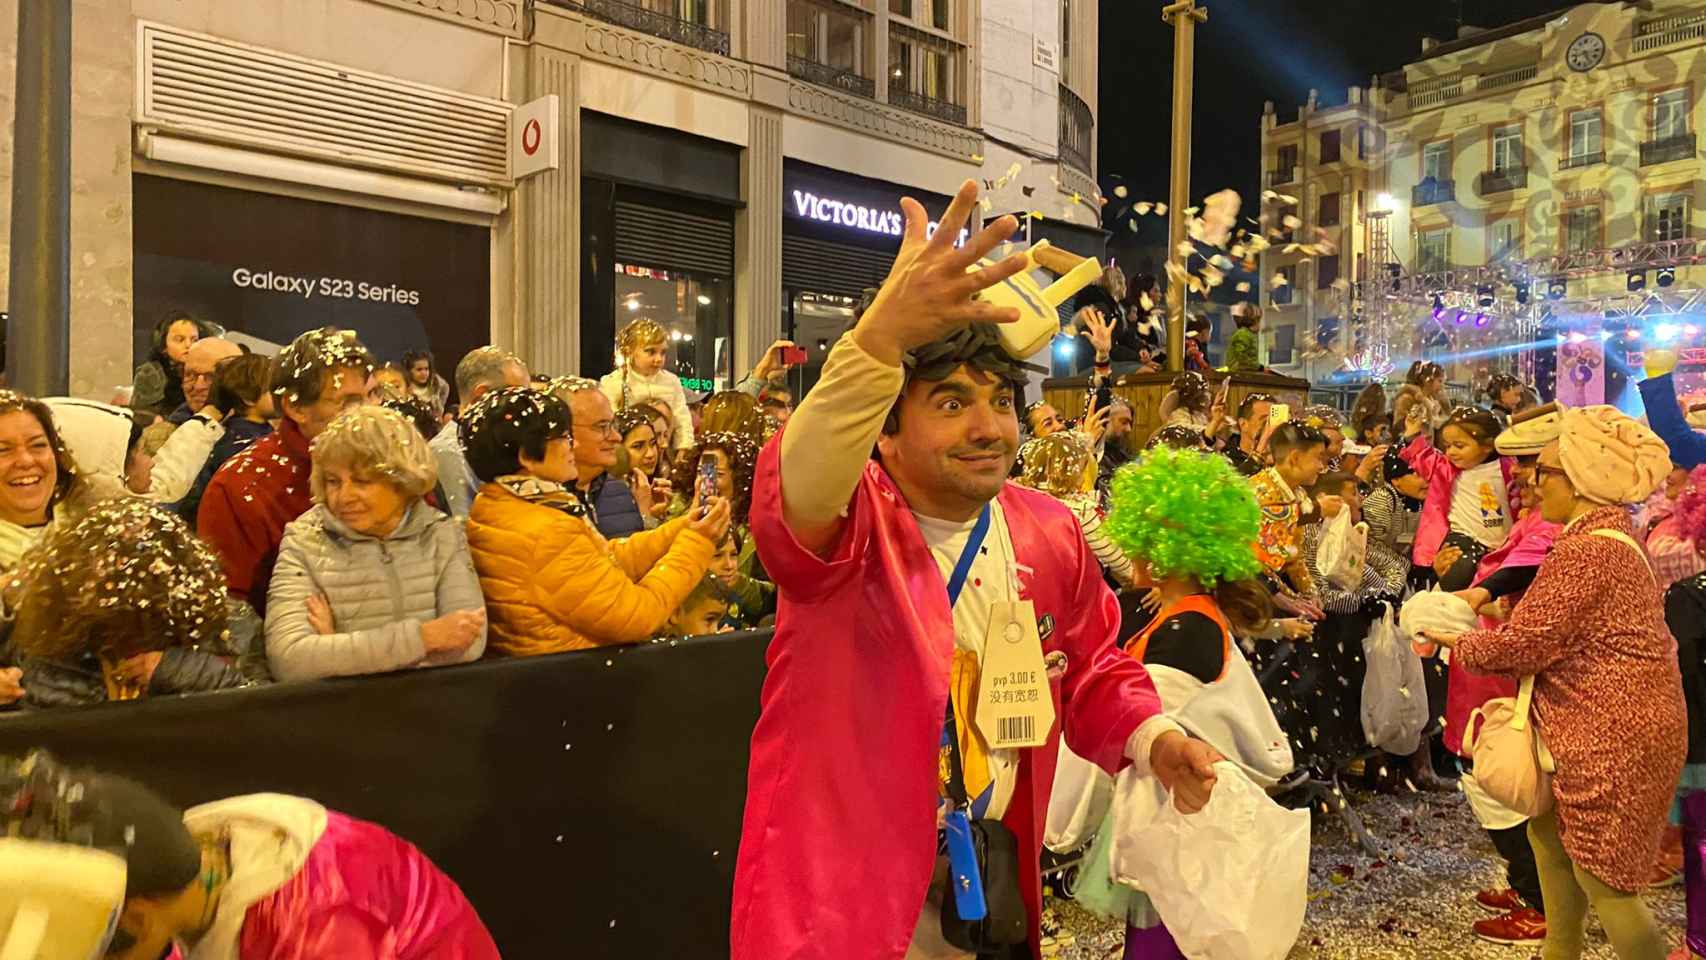 La noche del sábado de carnaval en el Centro de Málaga, en imágenes